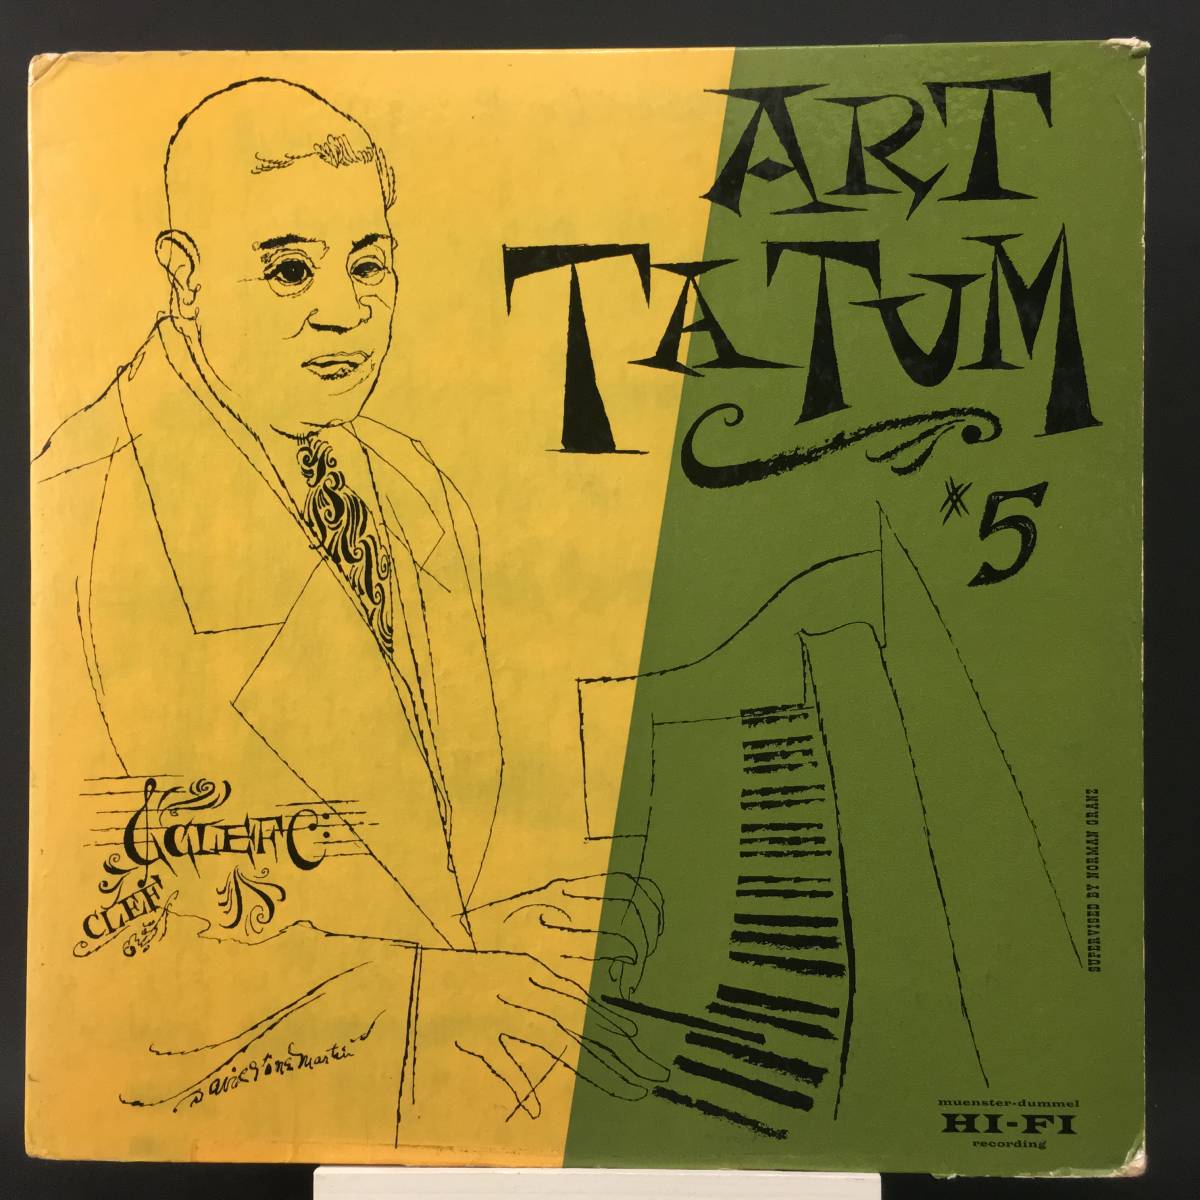 ◆ The Genius of Art Tatum No.5◆David Martin Stone ◆ CLEF 米 深溝_画像1